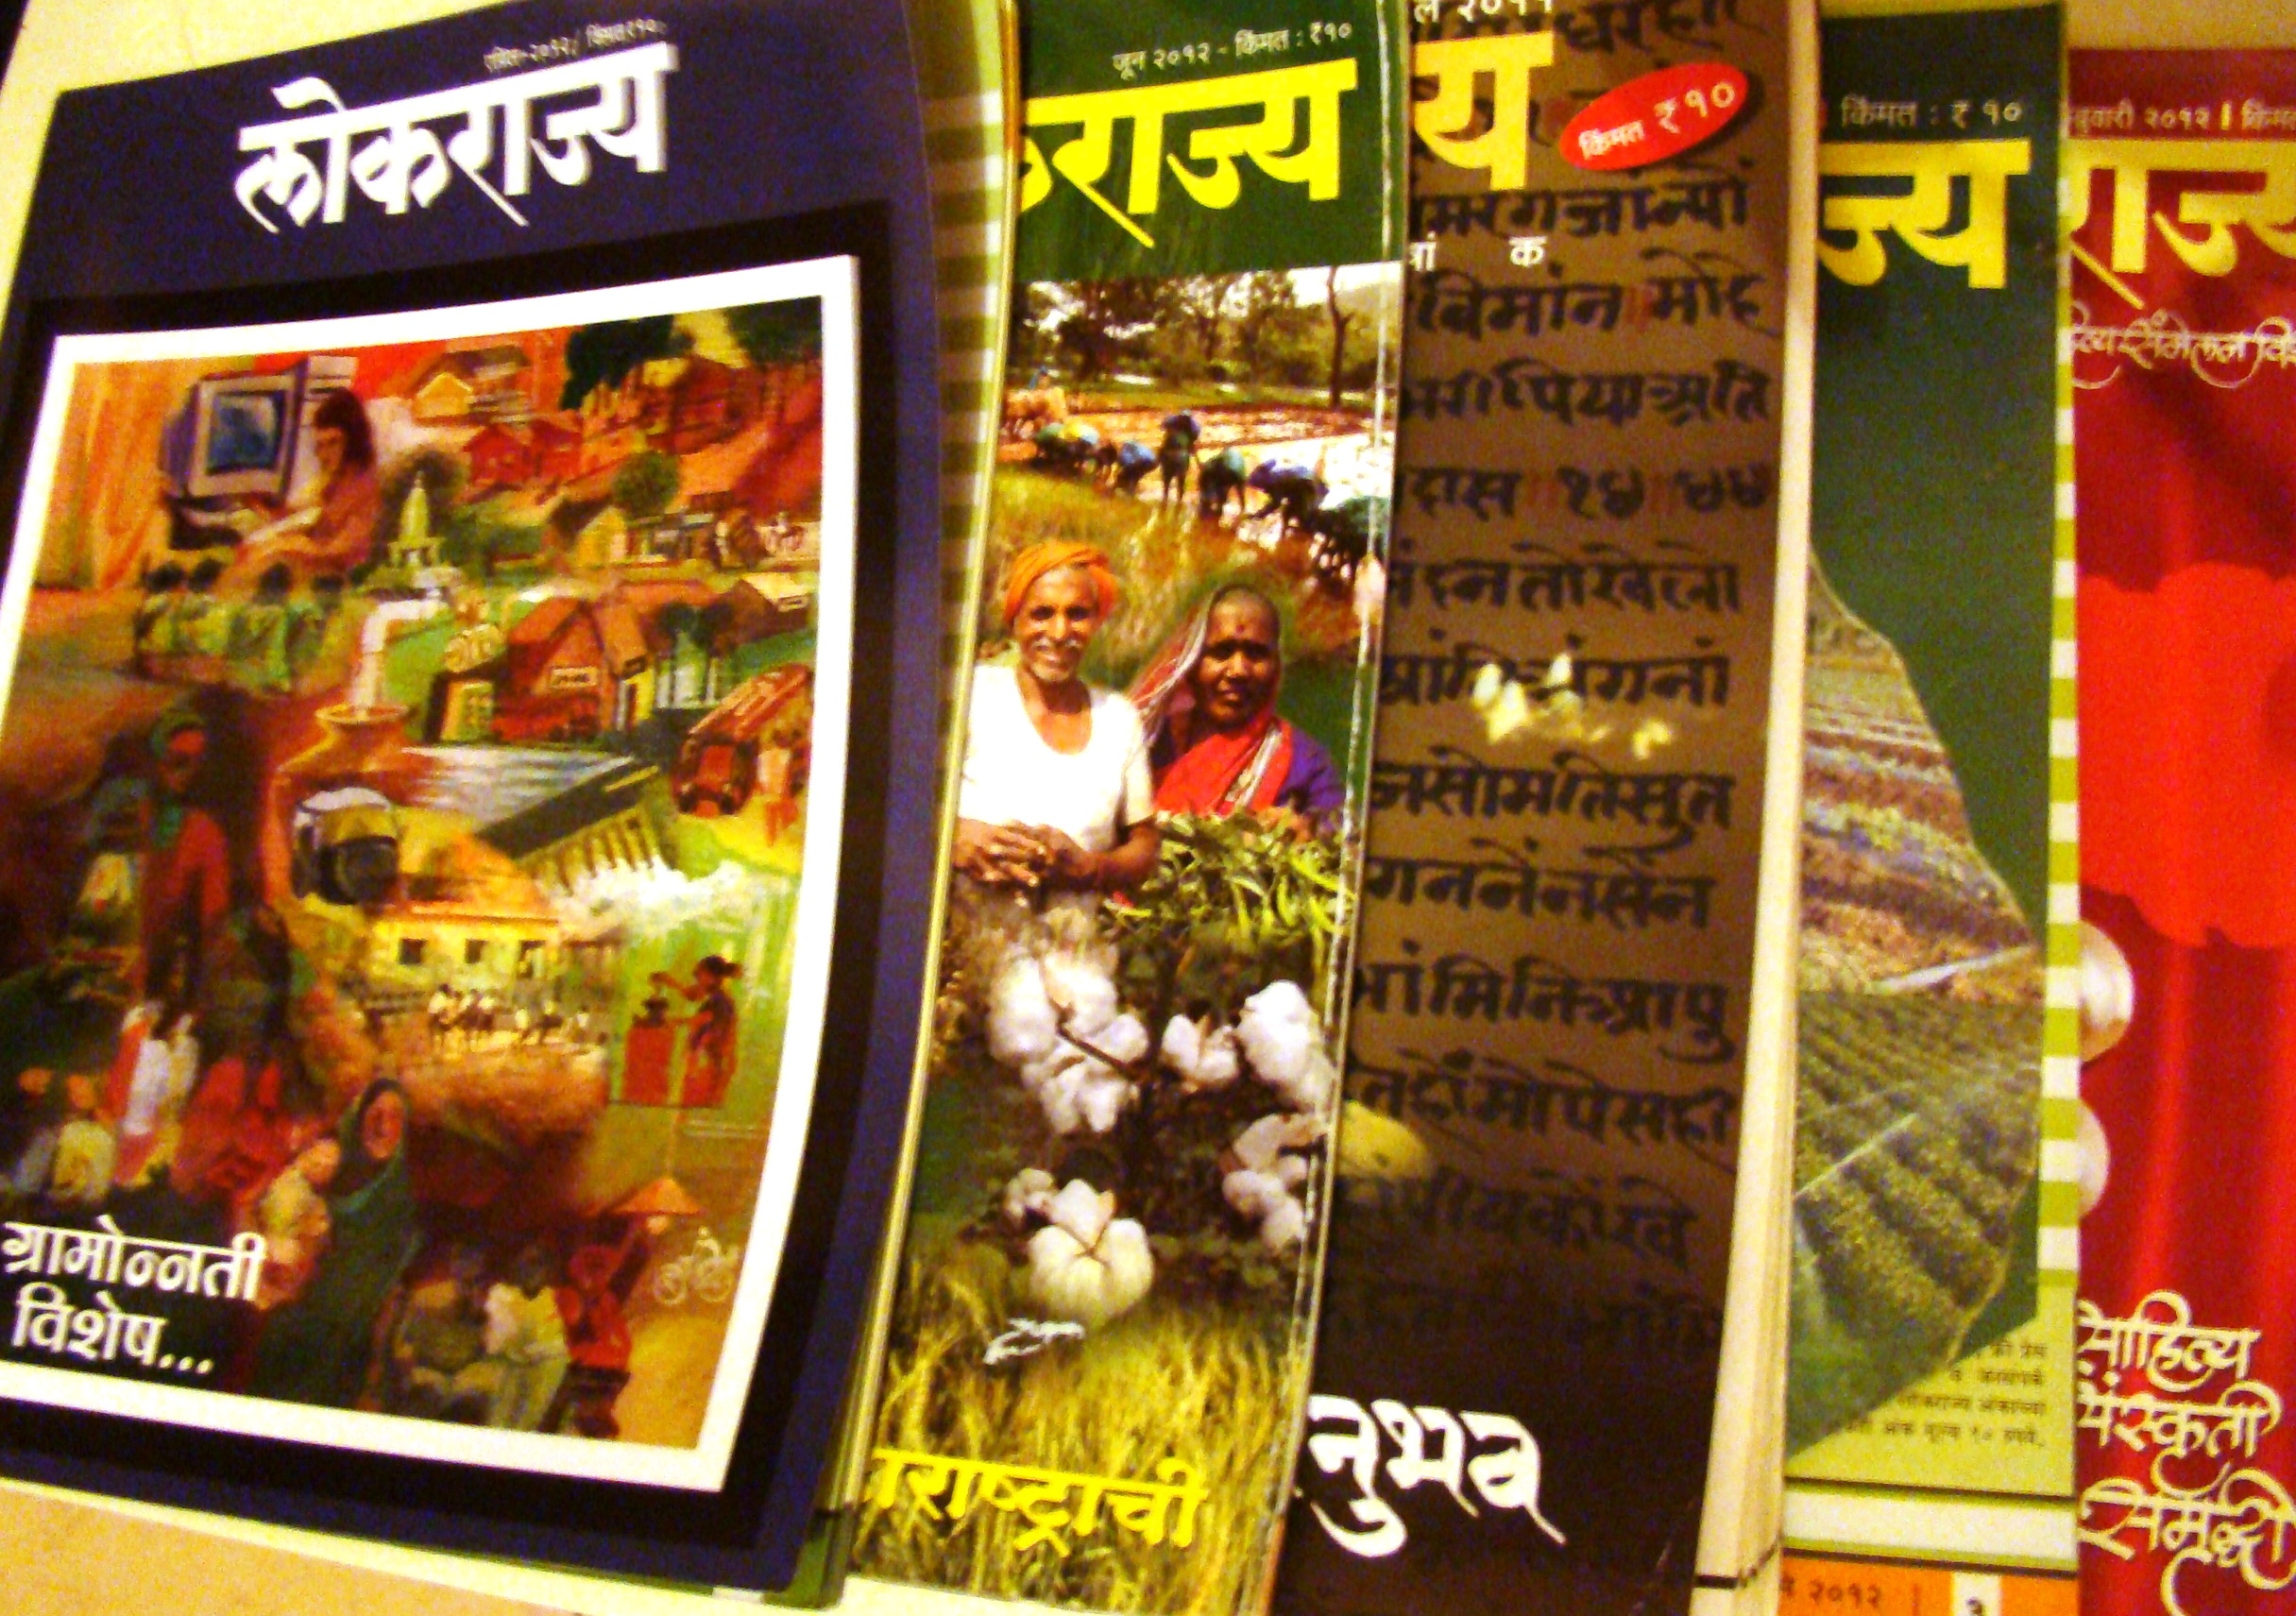 The most-read magazine in Maharashtra